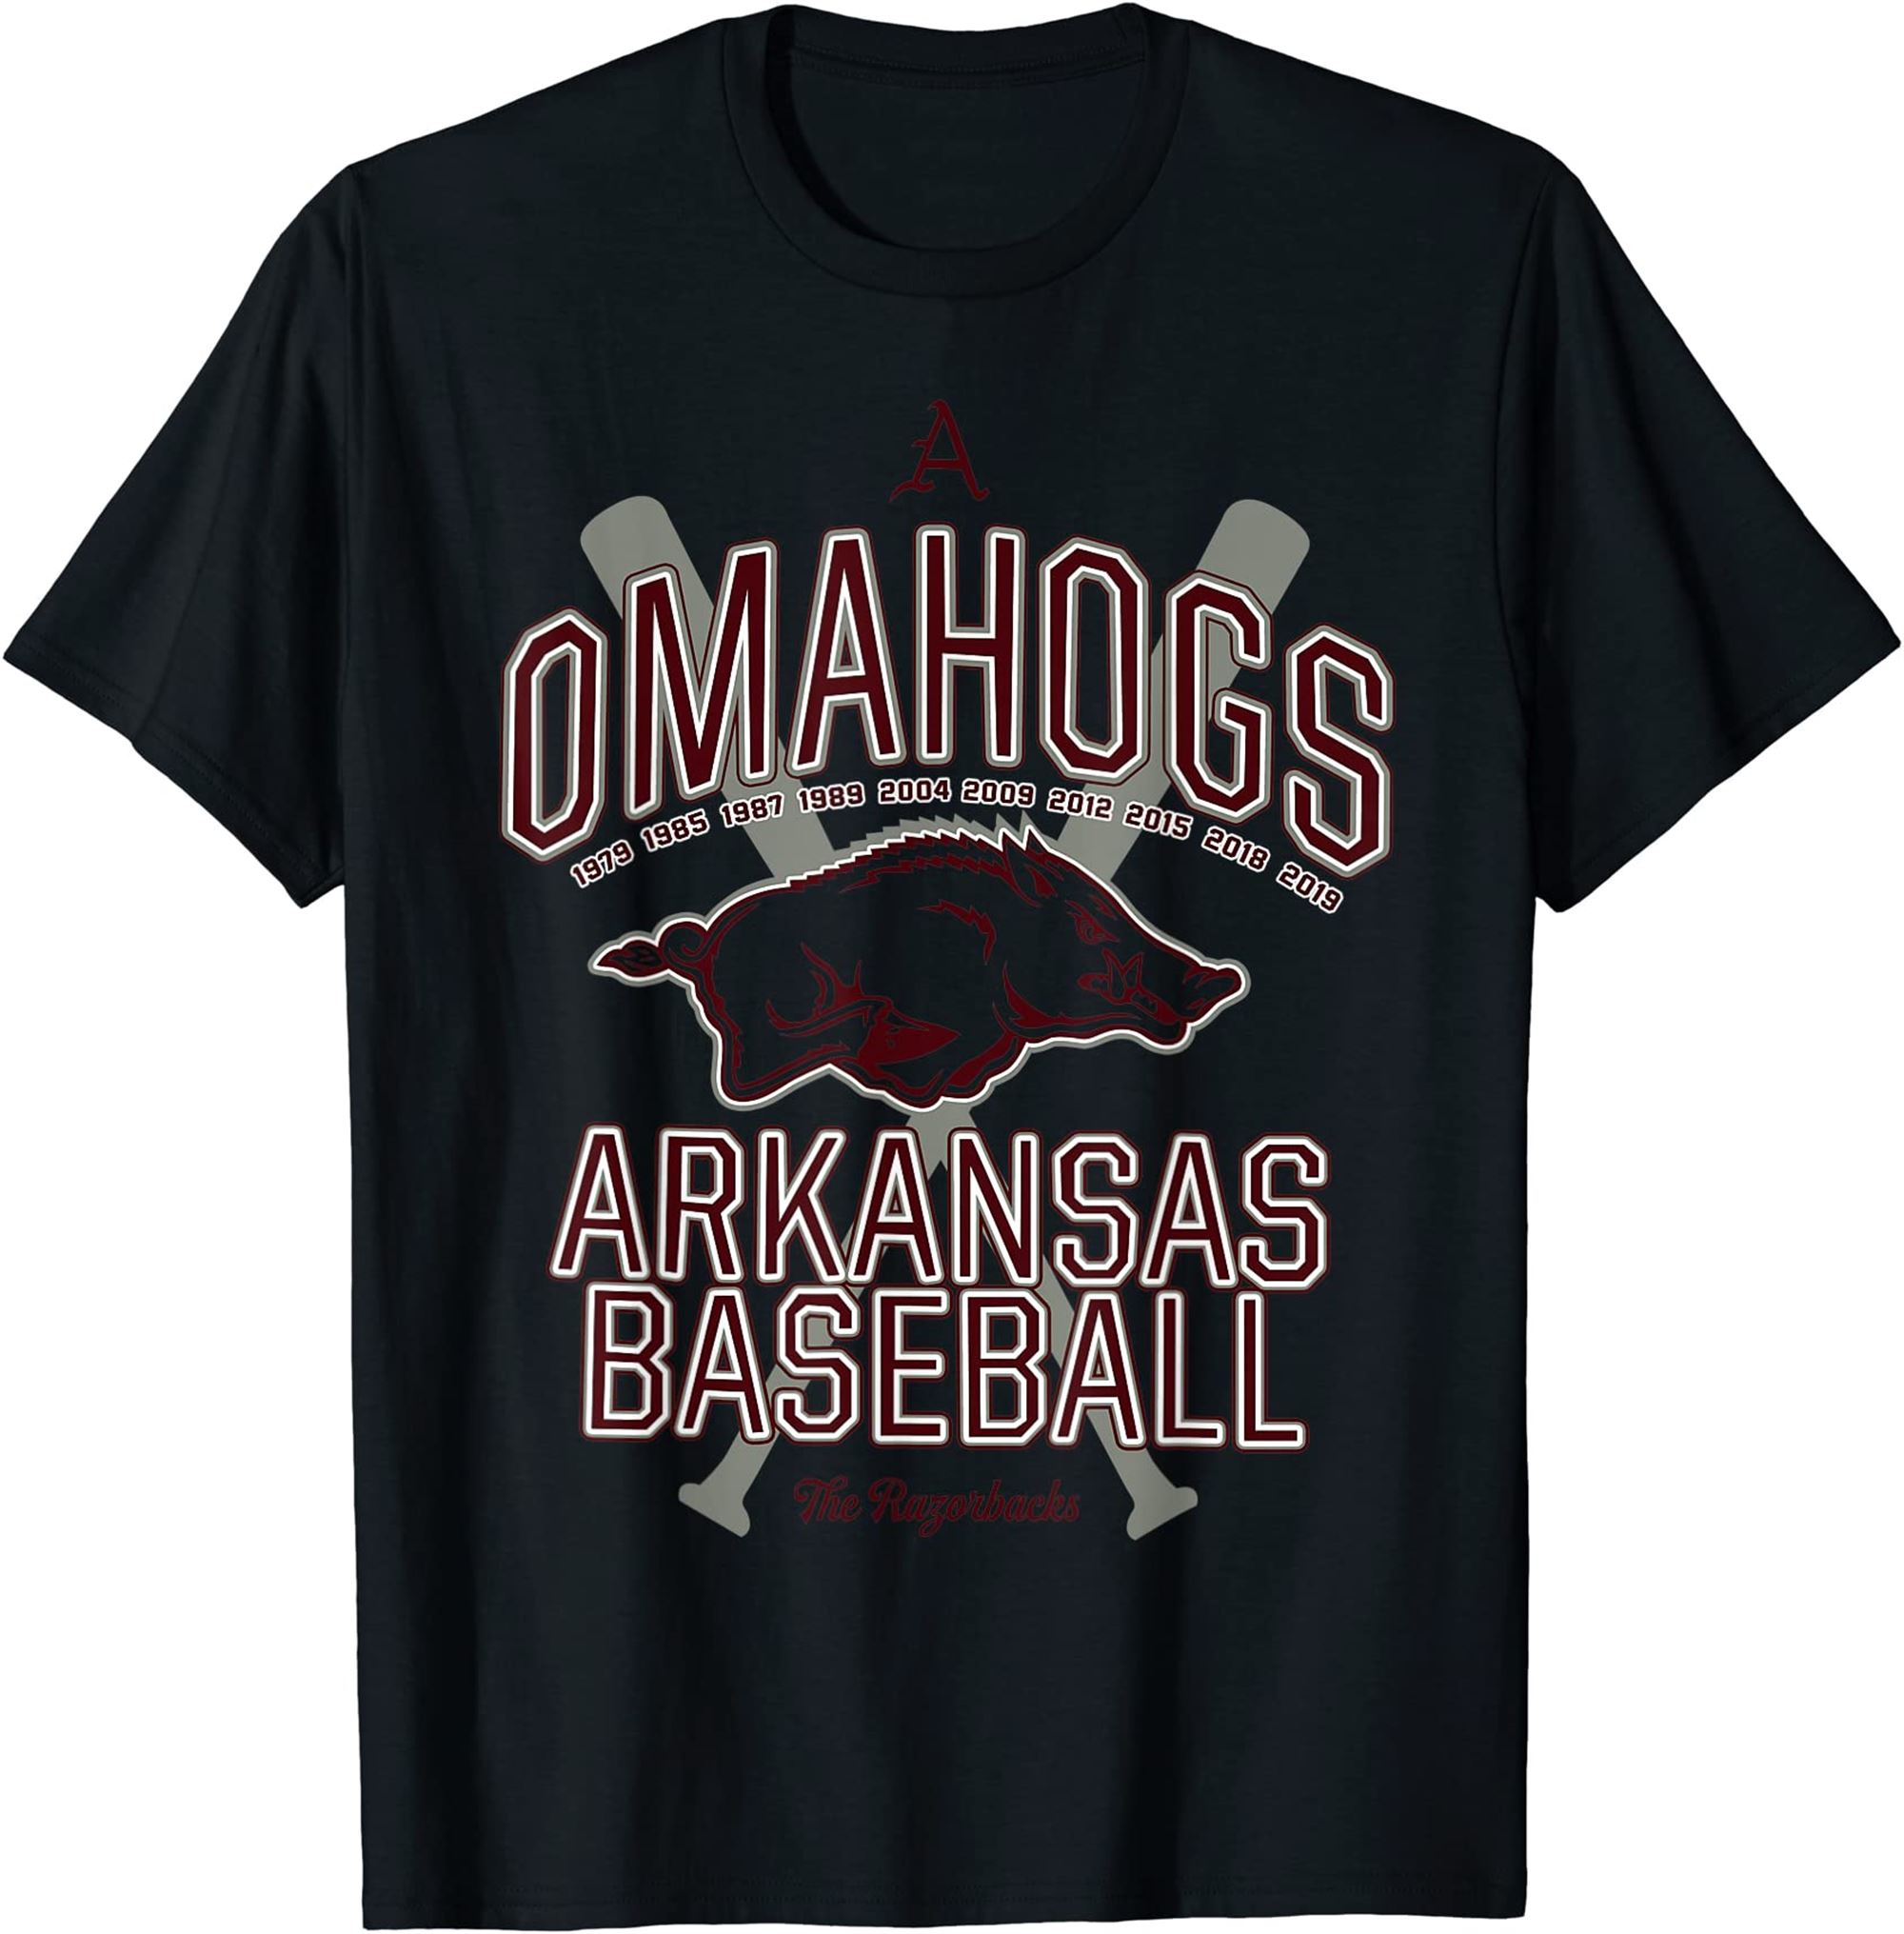 Baseball Pig Tshirt Arkansas Fan Omahogs Tshirt Full Size Up To 5xl